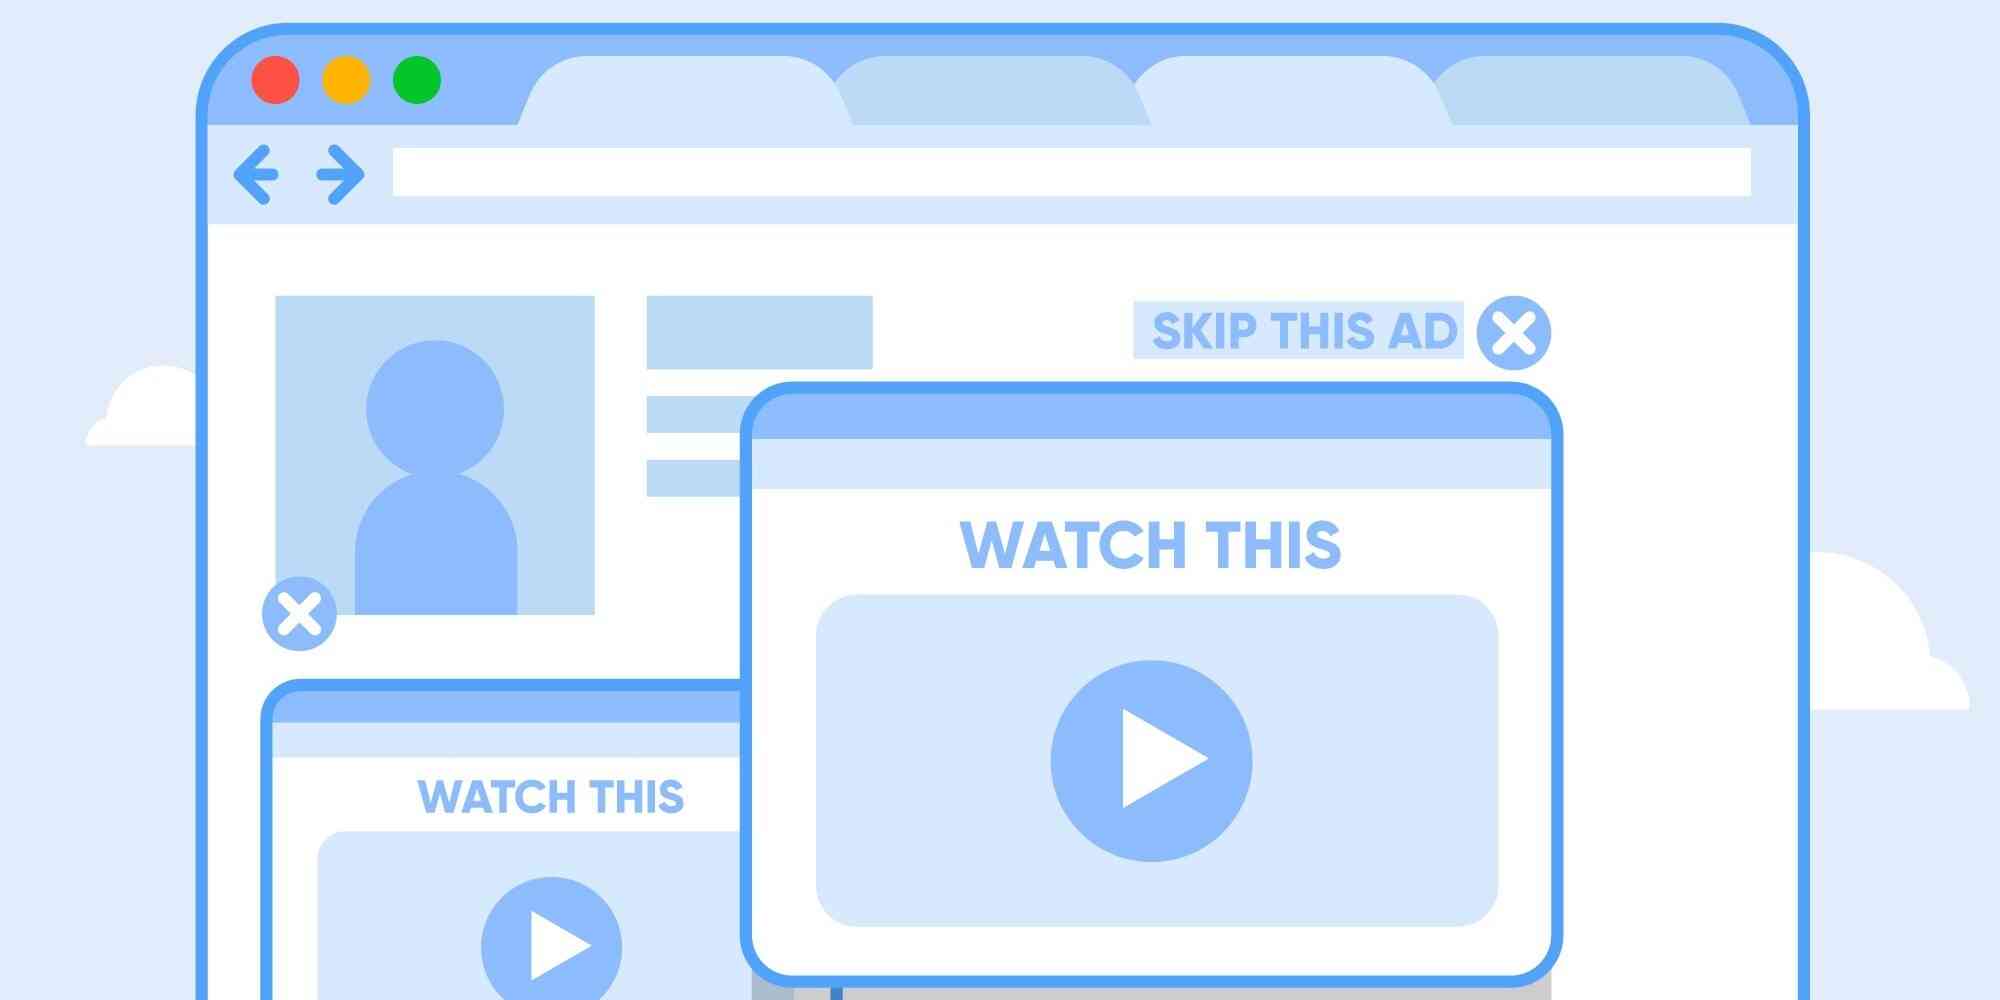 屏幕上显示着两个广告，一个跳过的广告和一个观看的视频。视频内容未知，可能是一段广告或者娱乐节目的片段。